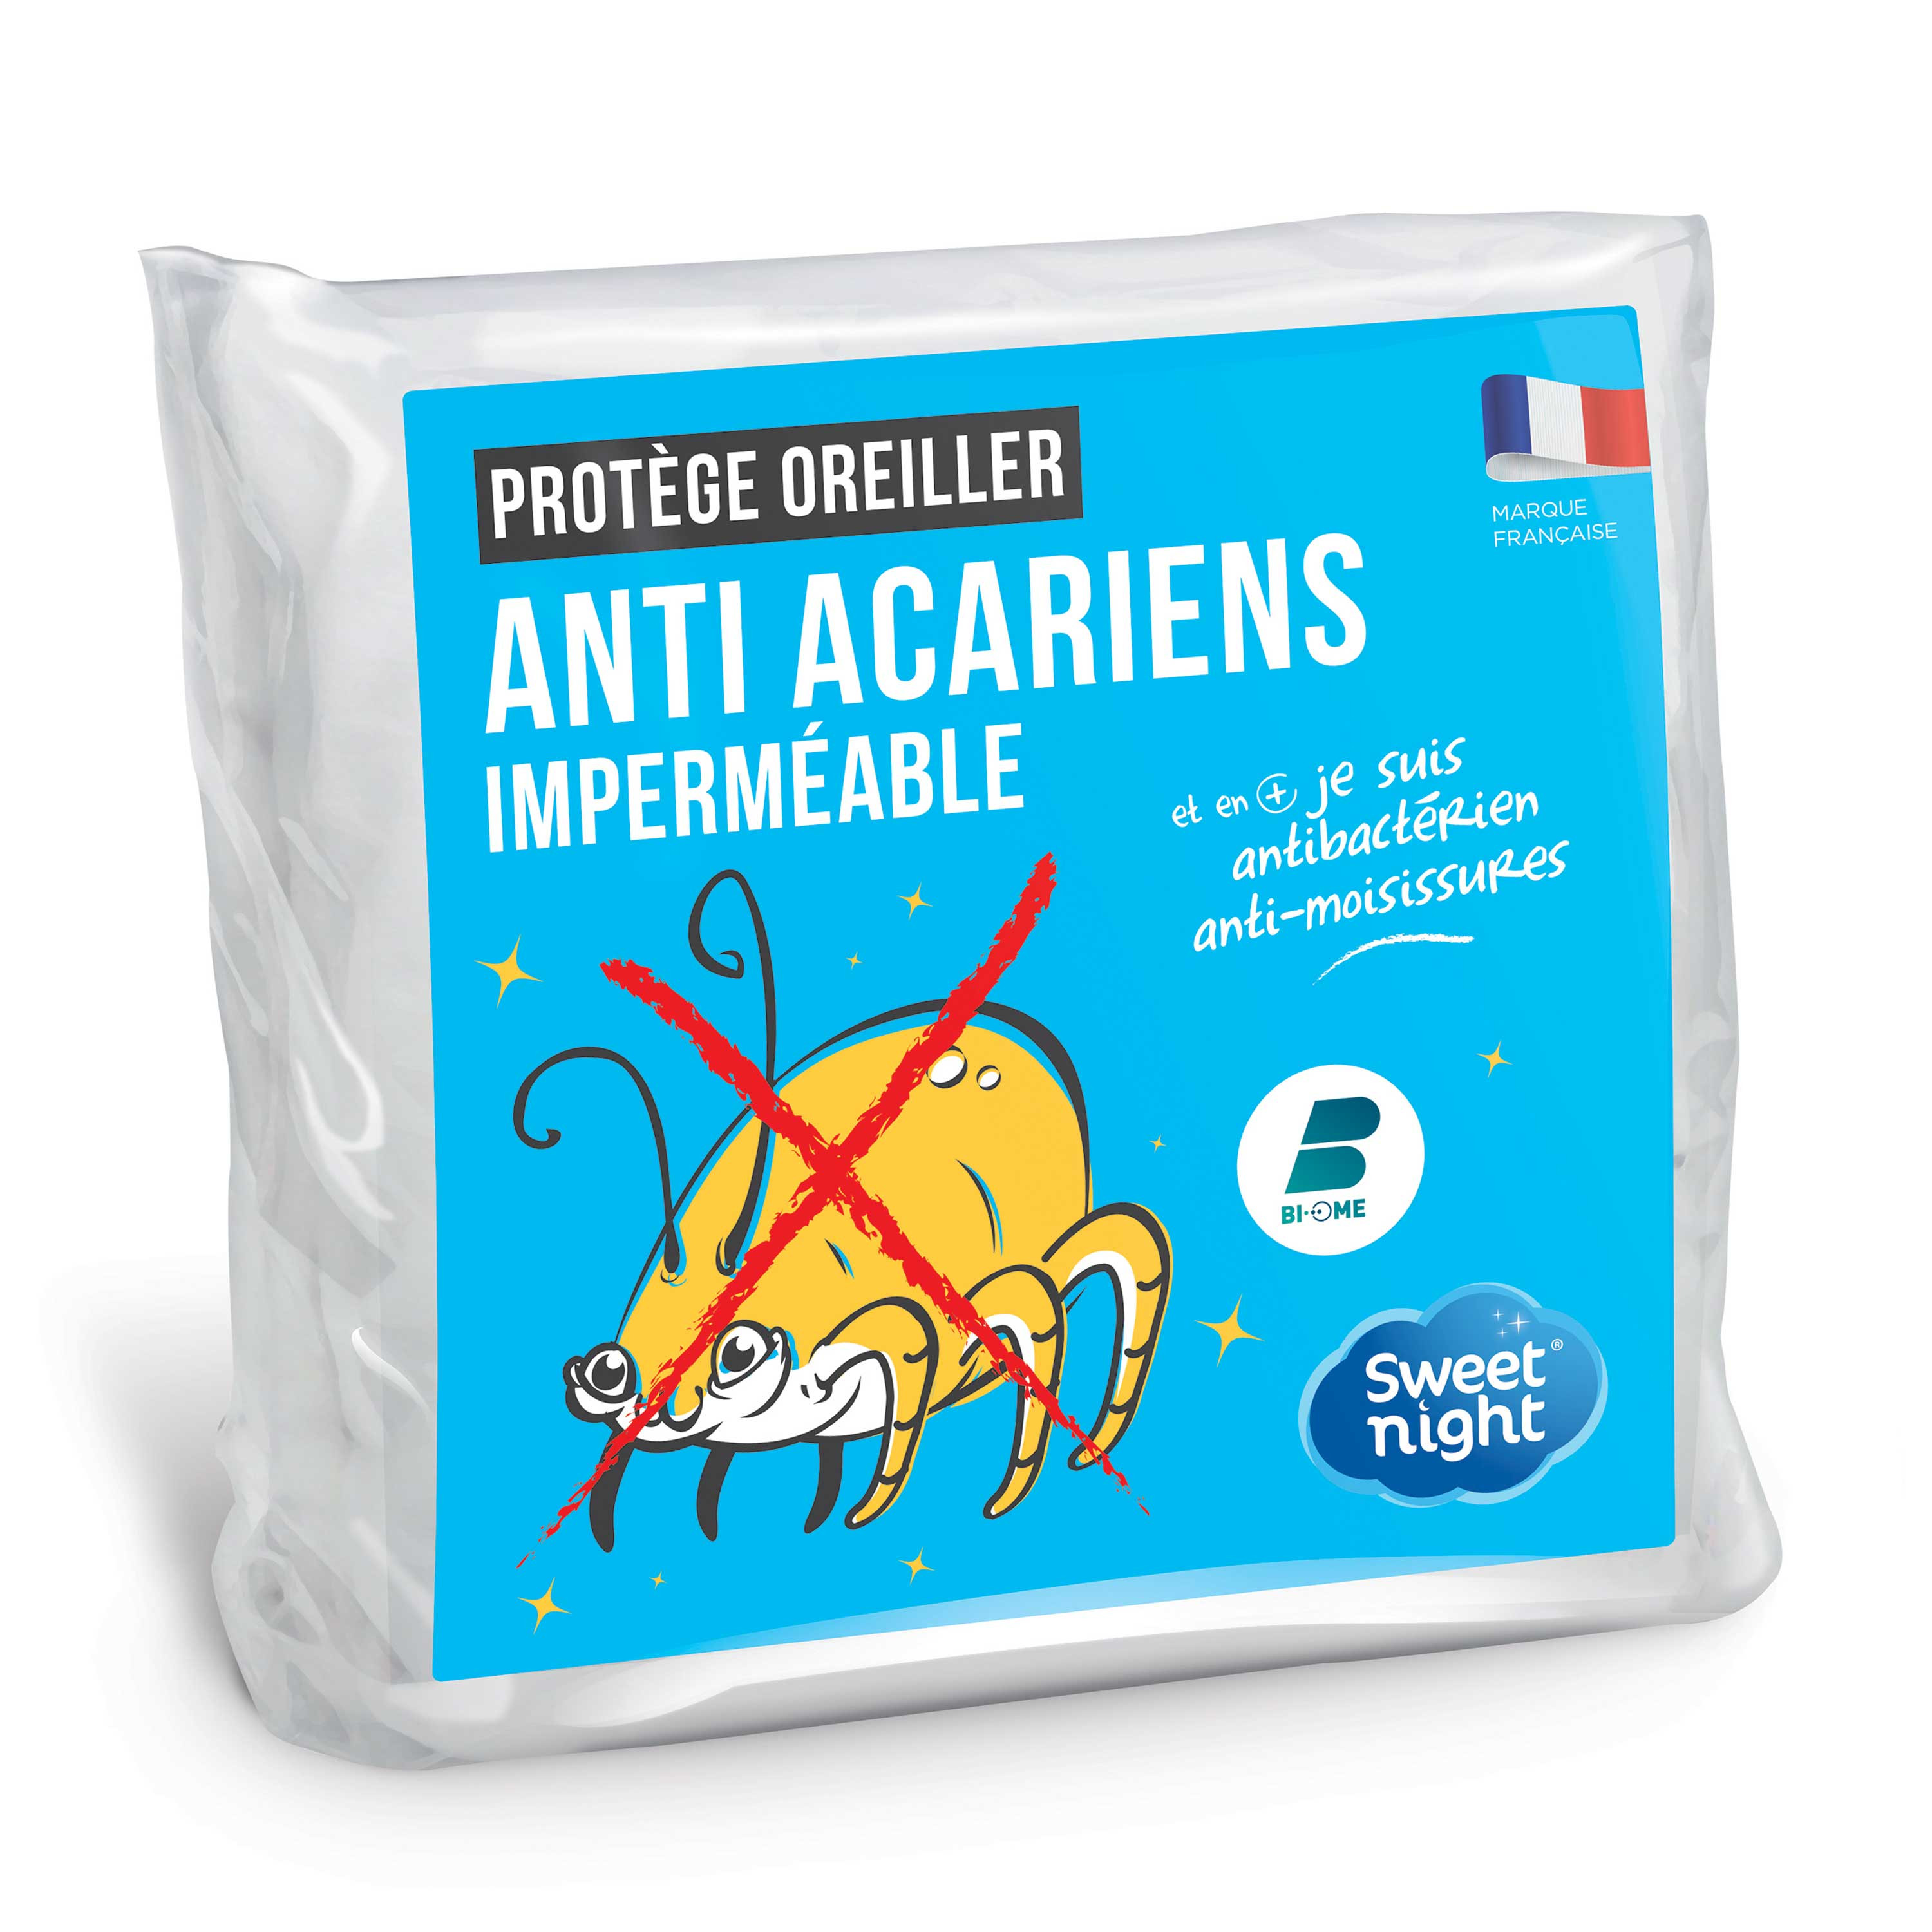 Protege Oreillers Impermeables Respirant Hypoallergénique Anti Acarien  60x60 cm